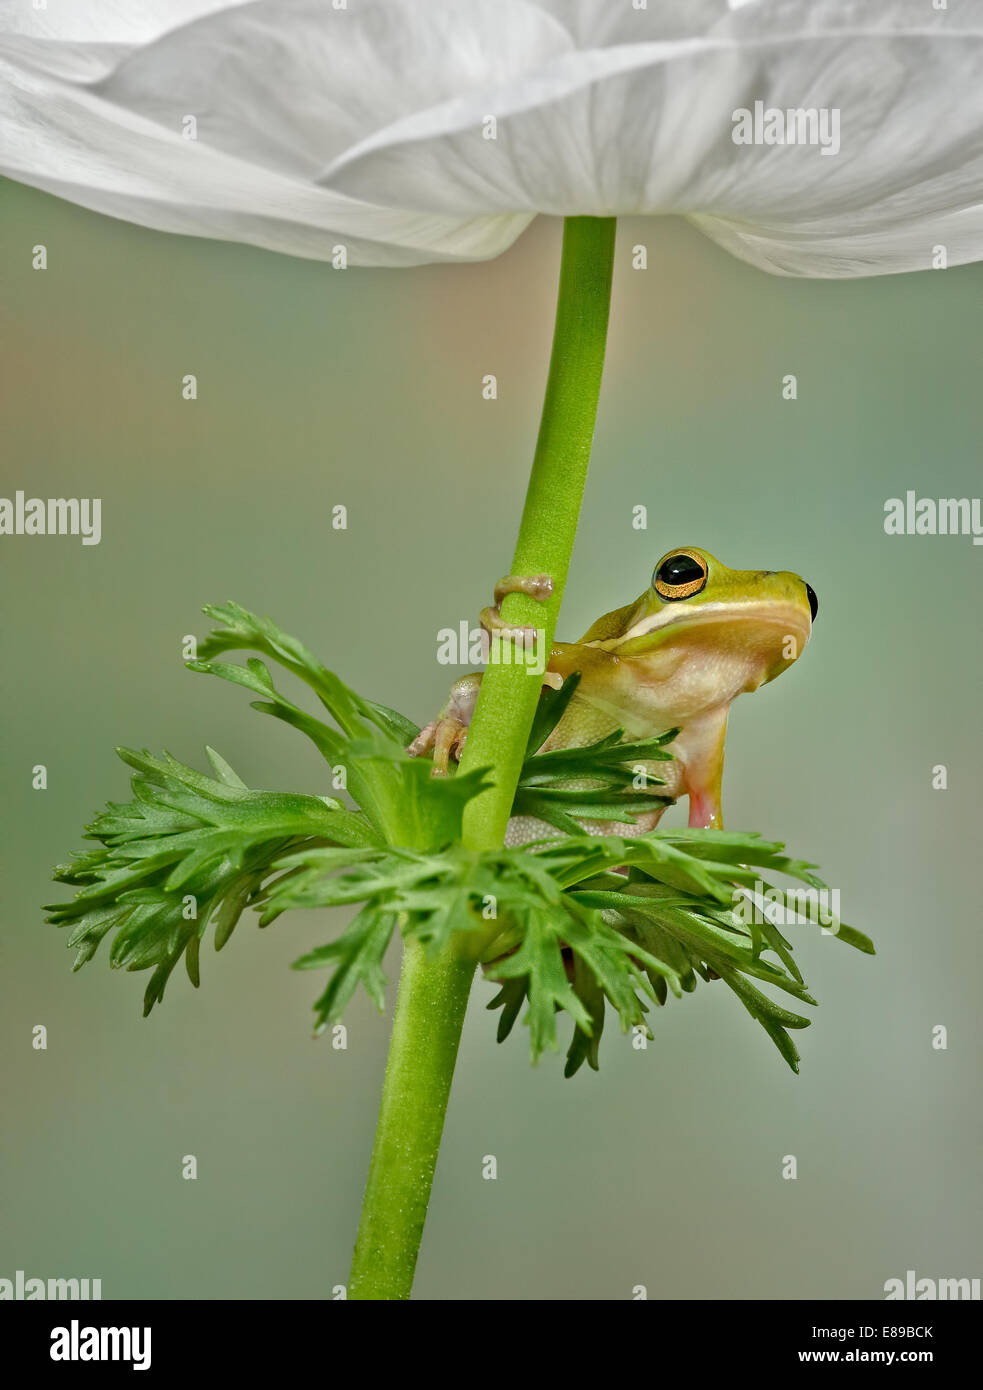 Green Tree Frog sitzt auf Blätter unten eine weiße Blume. Die weißen Blütenblätter der Blume als Vordach für diese niedlichen kleinen Frosch. Stockfoto